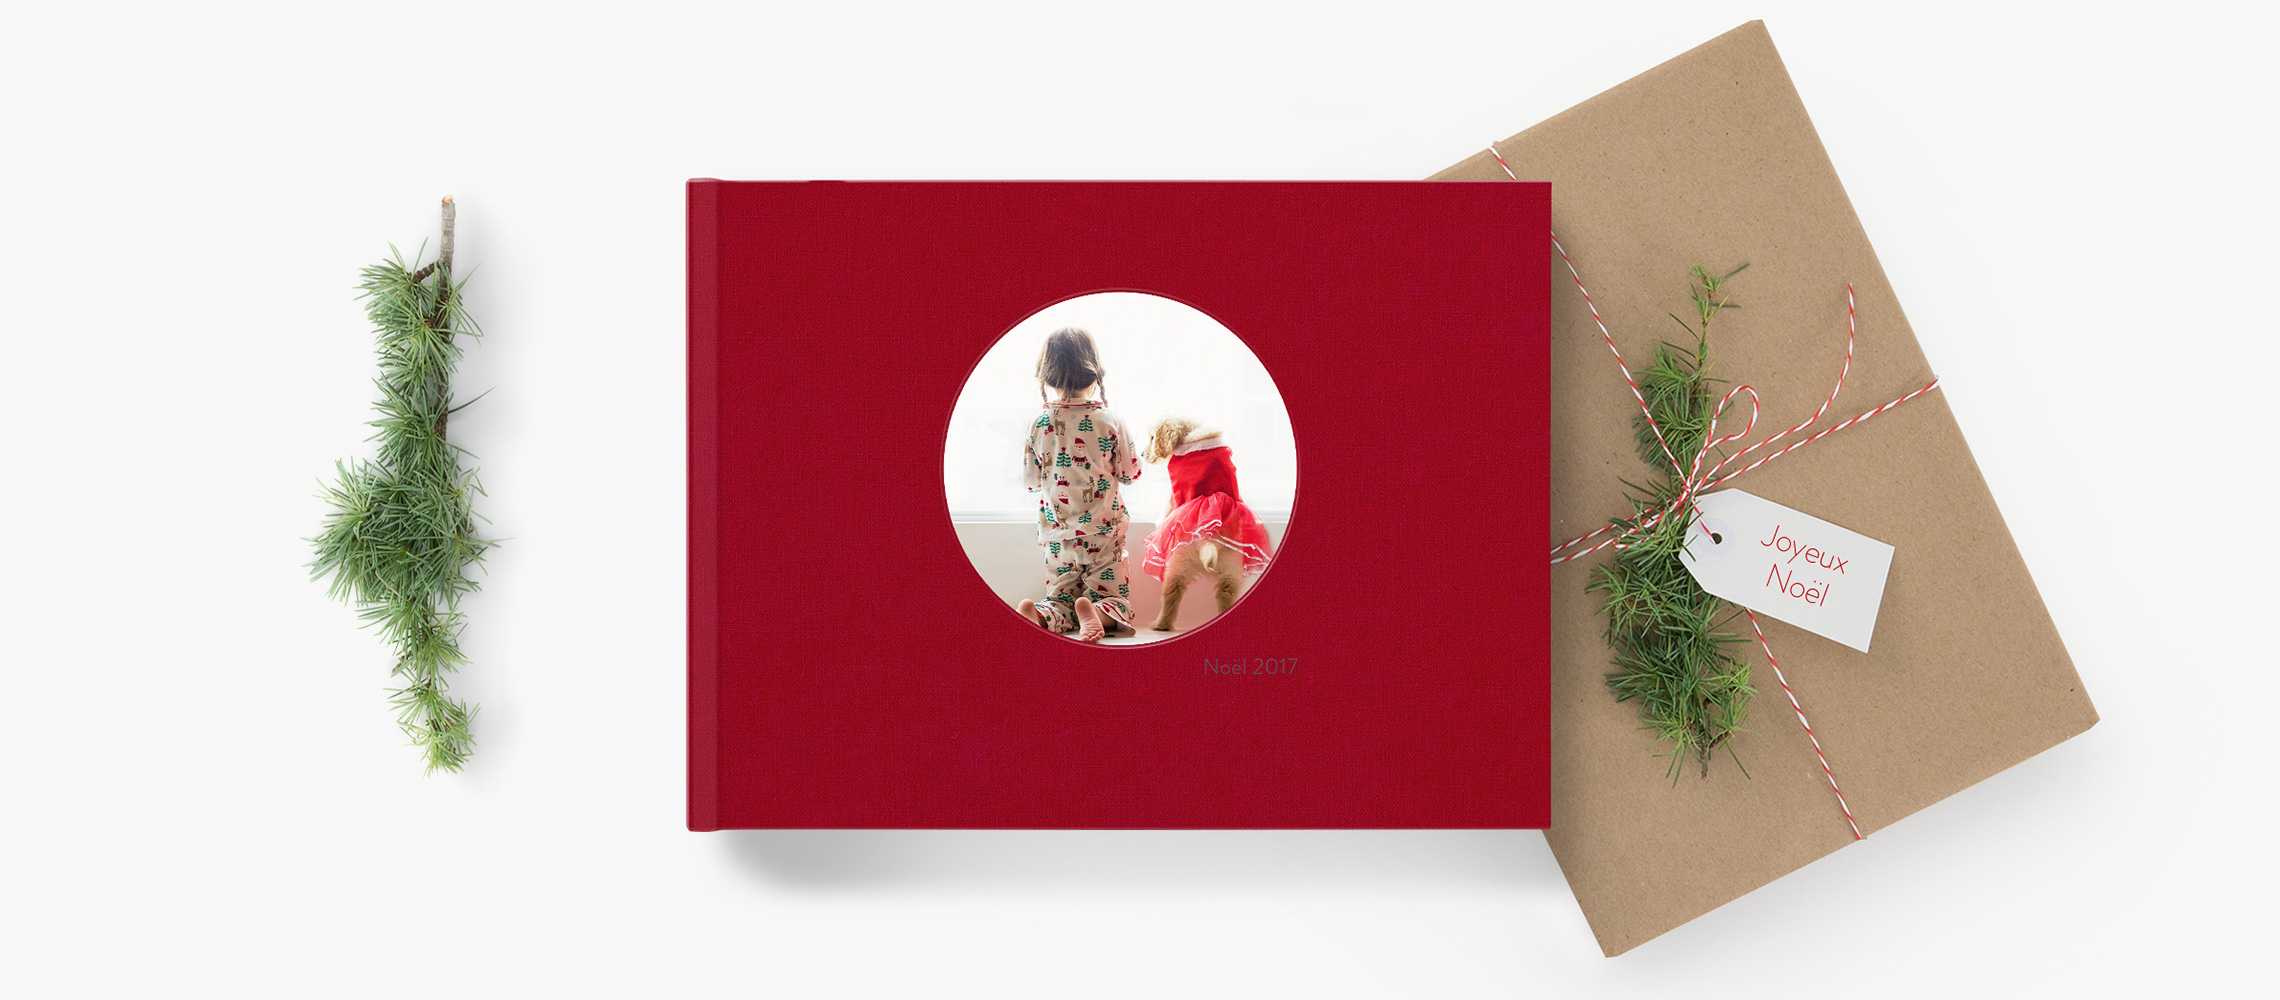 Un fotolibro rojo junto a un regalo de Navidad rodeado de adornos navideños.